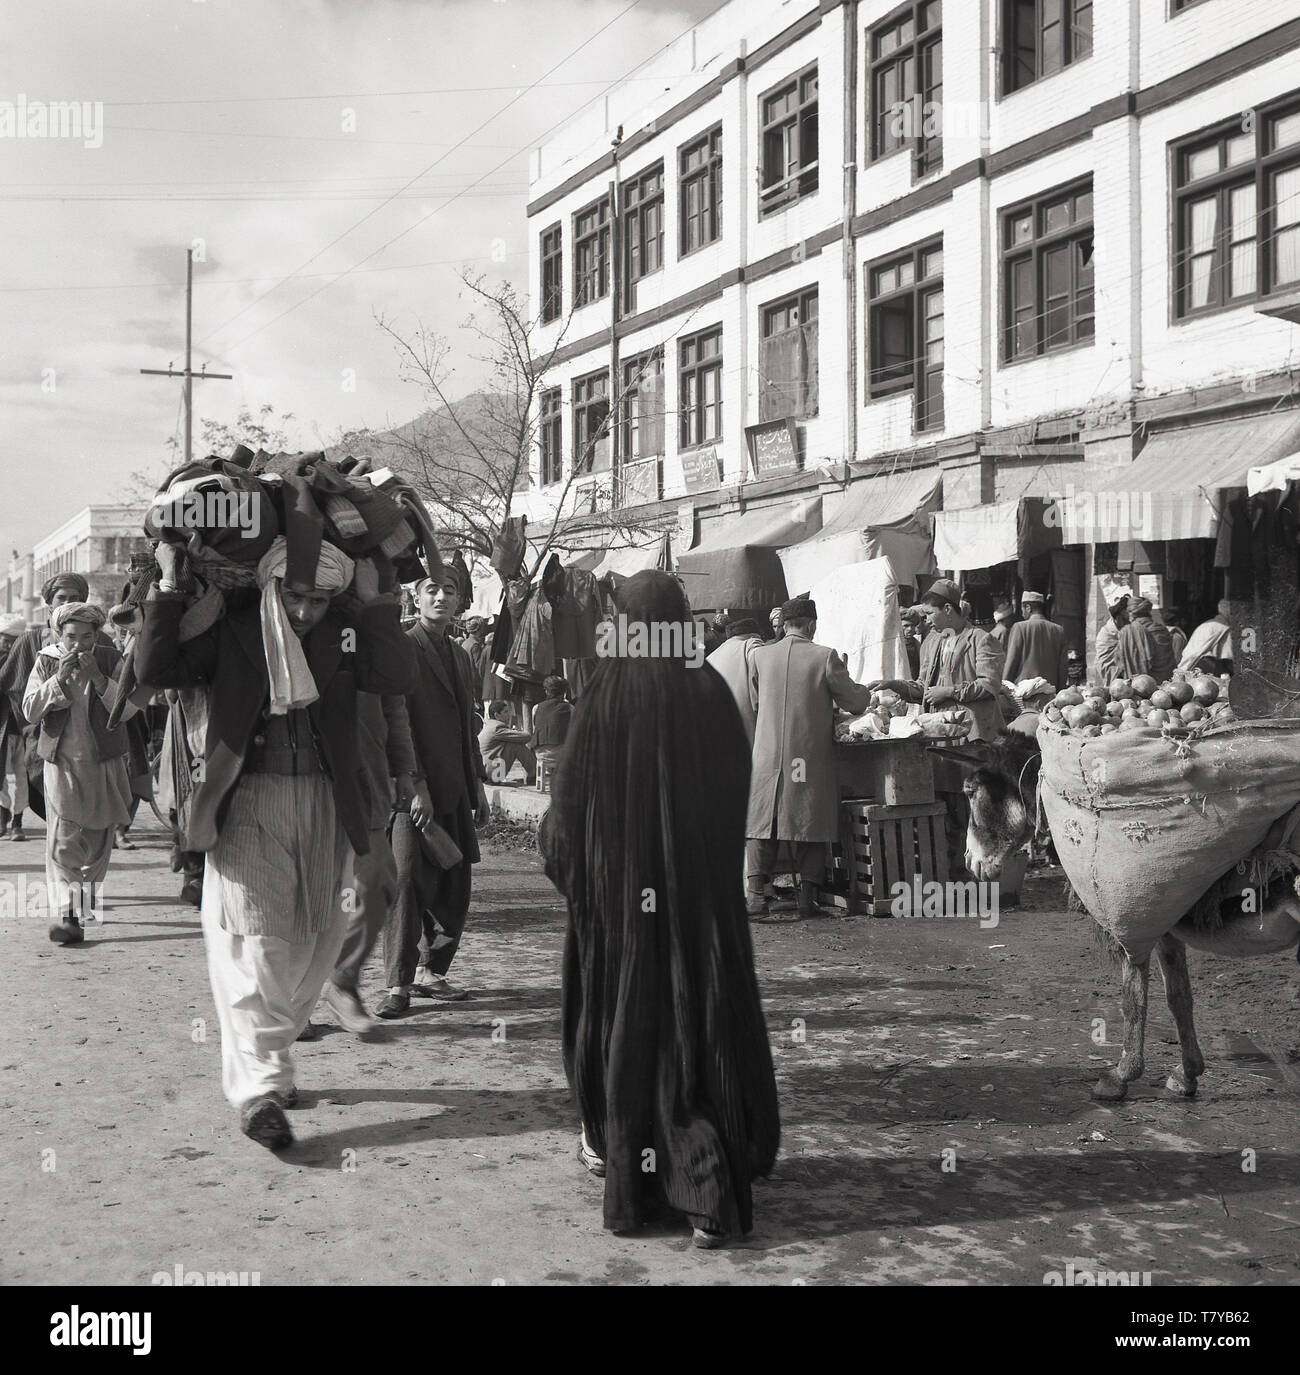 Années 1950, historiques, high street, Kabal, l'Afghanistan montrant les étals du marché et de l'activité et la population locale en costume national. Banque D'Images